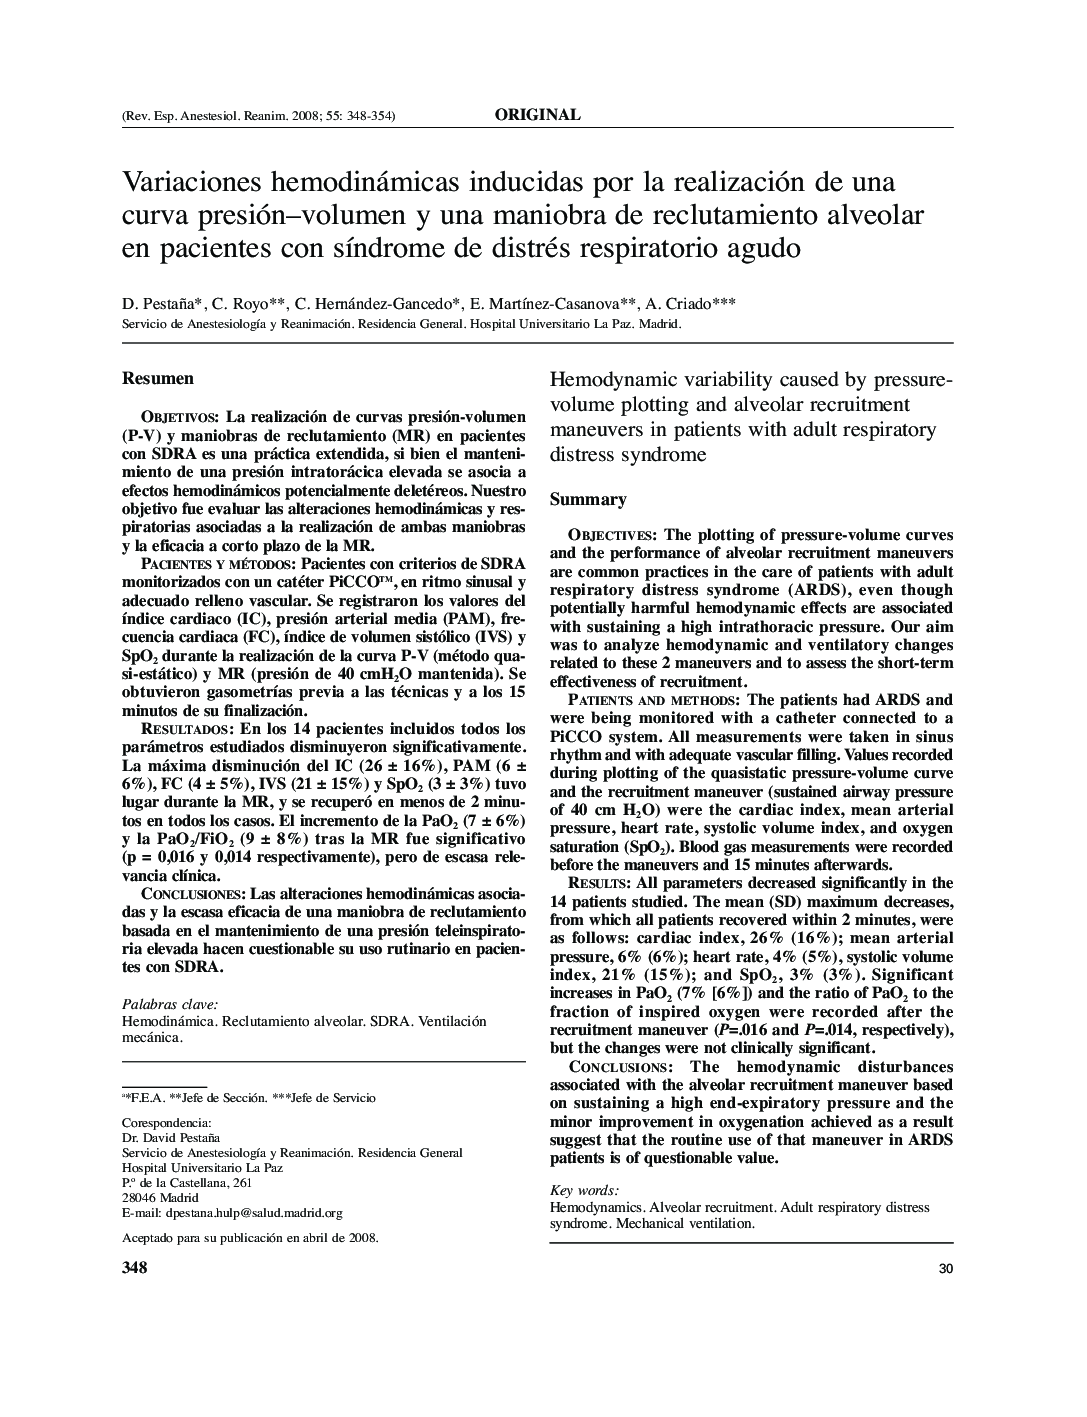 Variaciones hemodinámicas inducidas por la realización de una curva presión-volumen y una maniobra de reclutamiento alveolar en pacientes con sÃ­ndrome de distrés respiratorio agudo